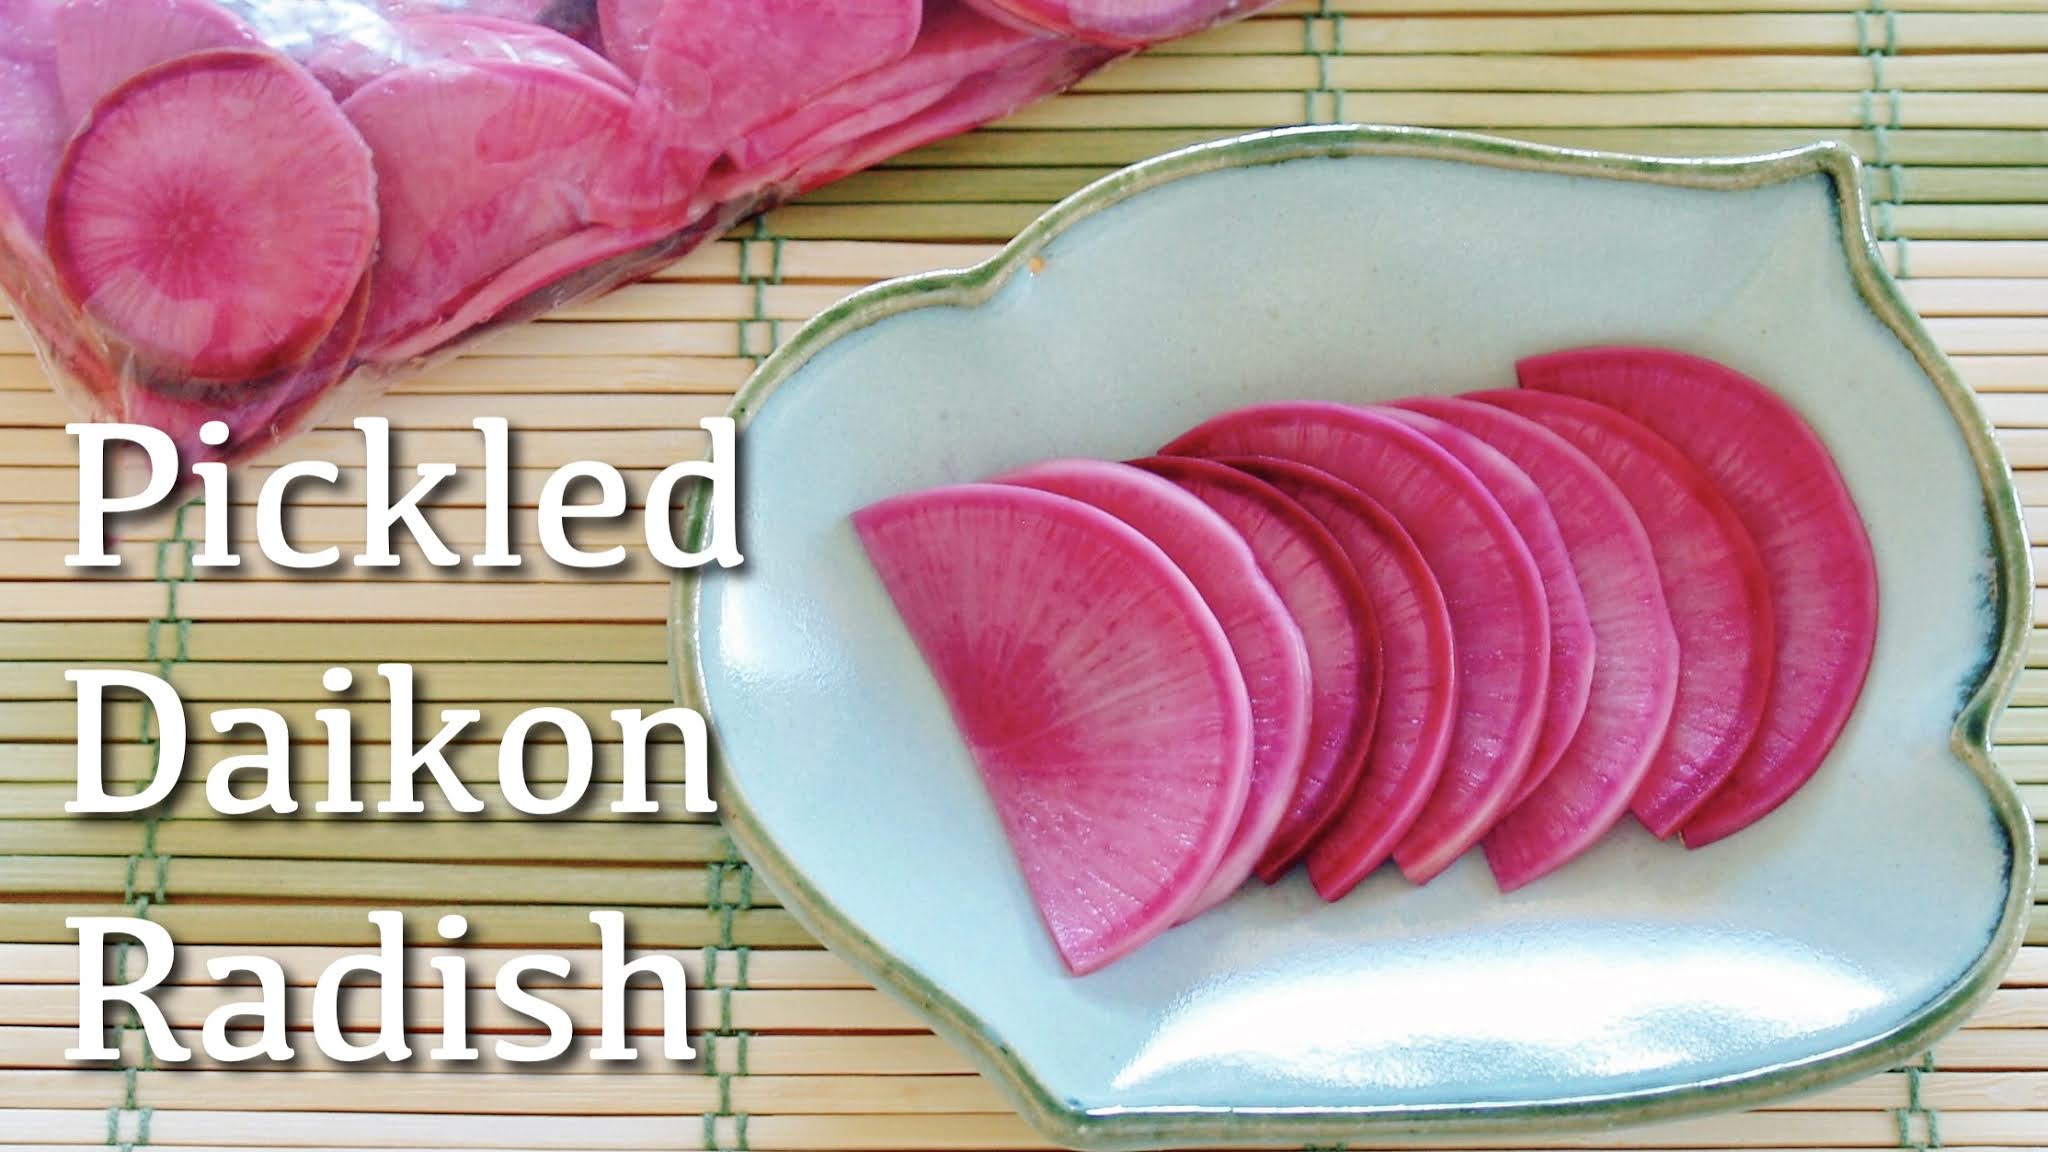 Japanese Pickled Daikon Radish (Tsukemono) | Japanese Cooking Video ...